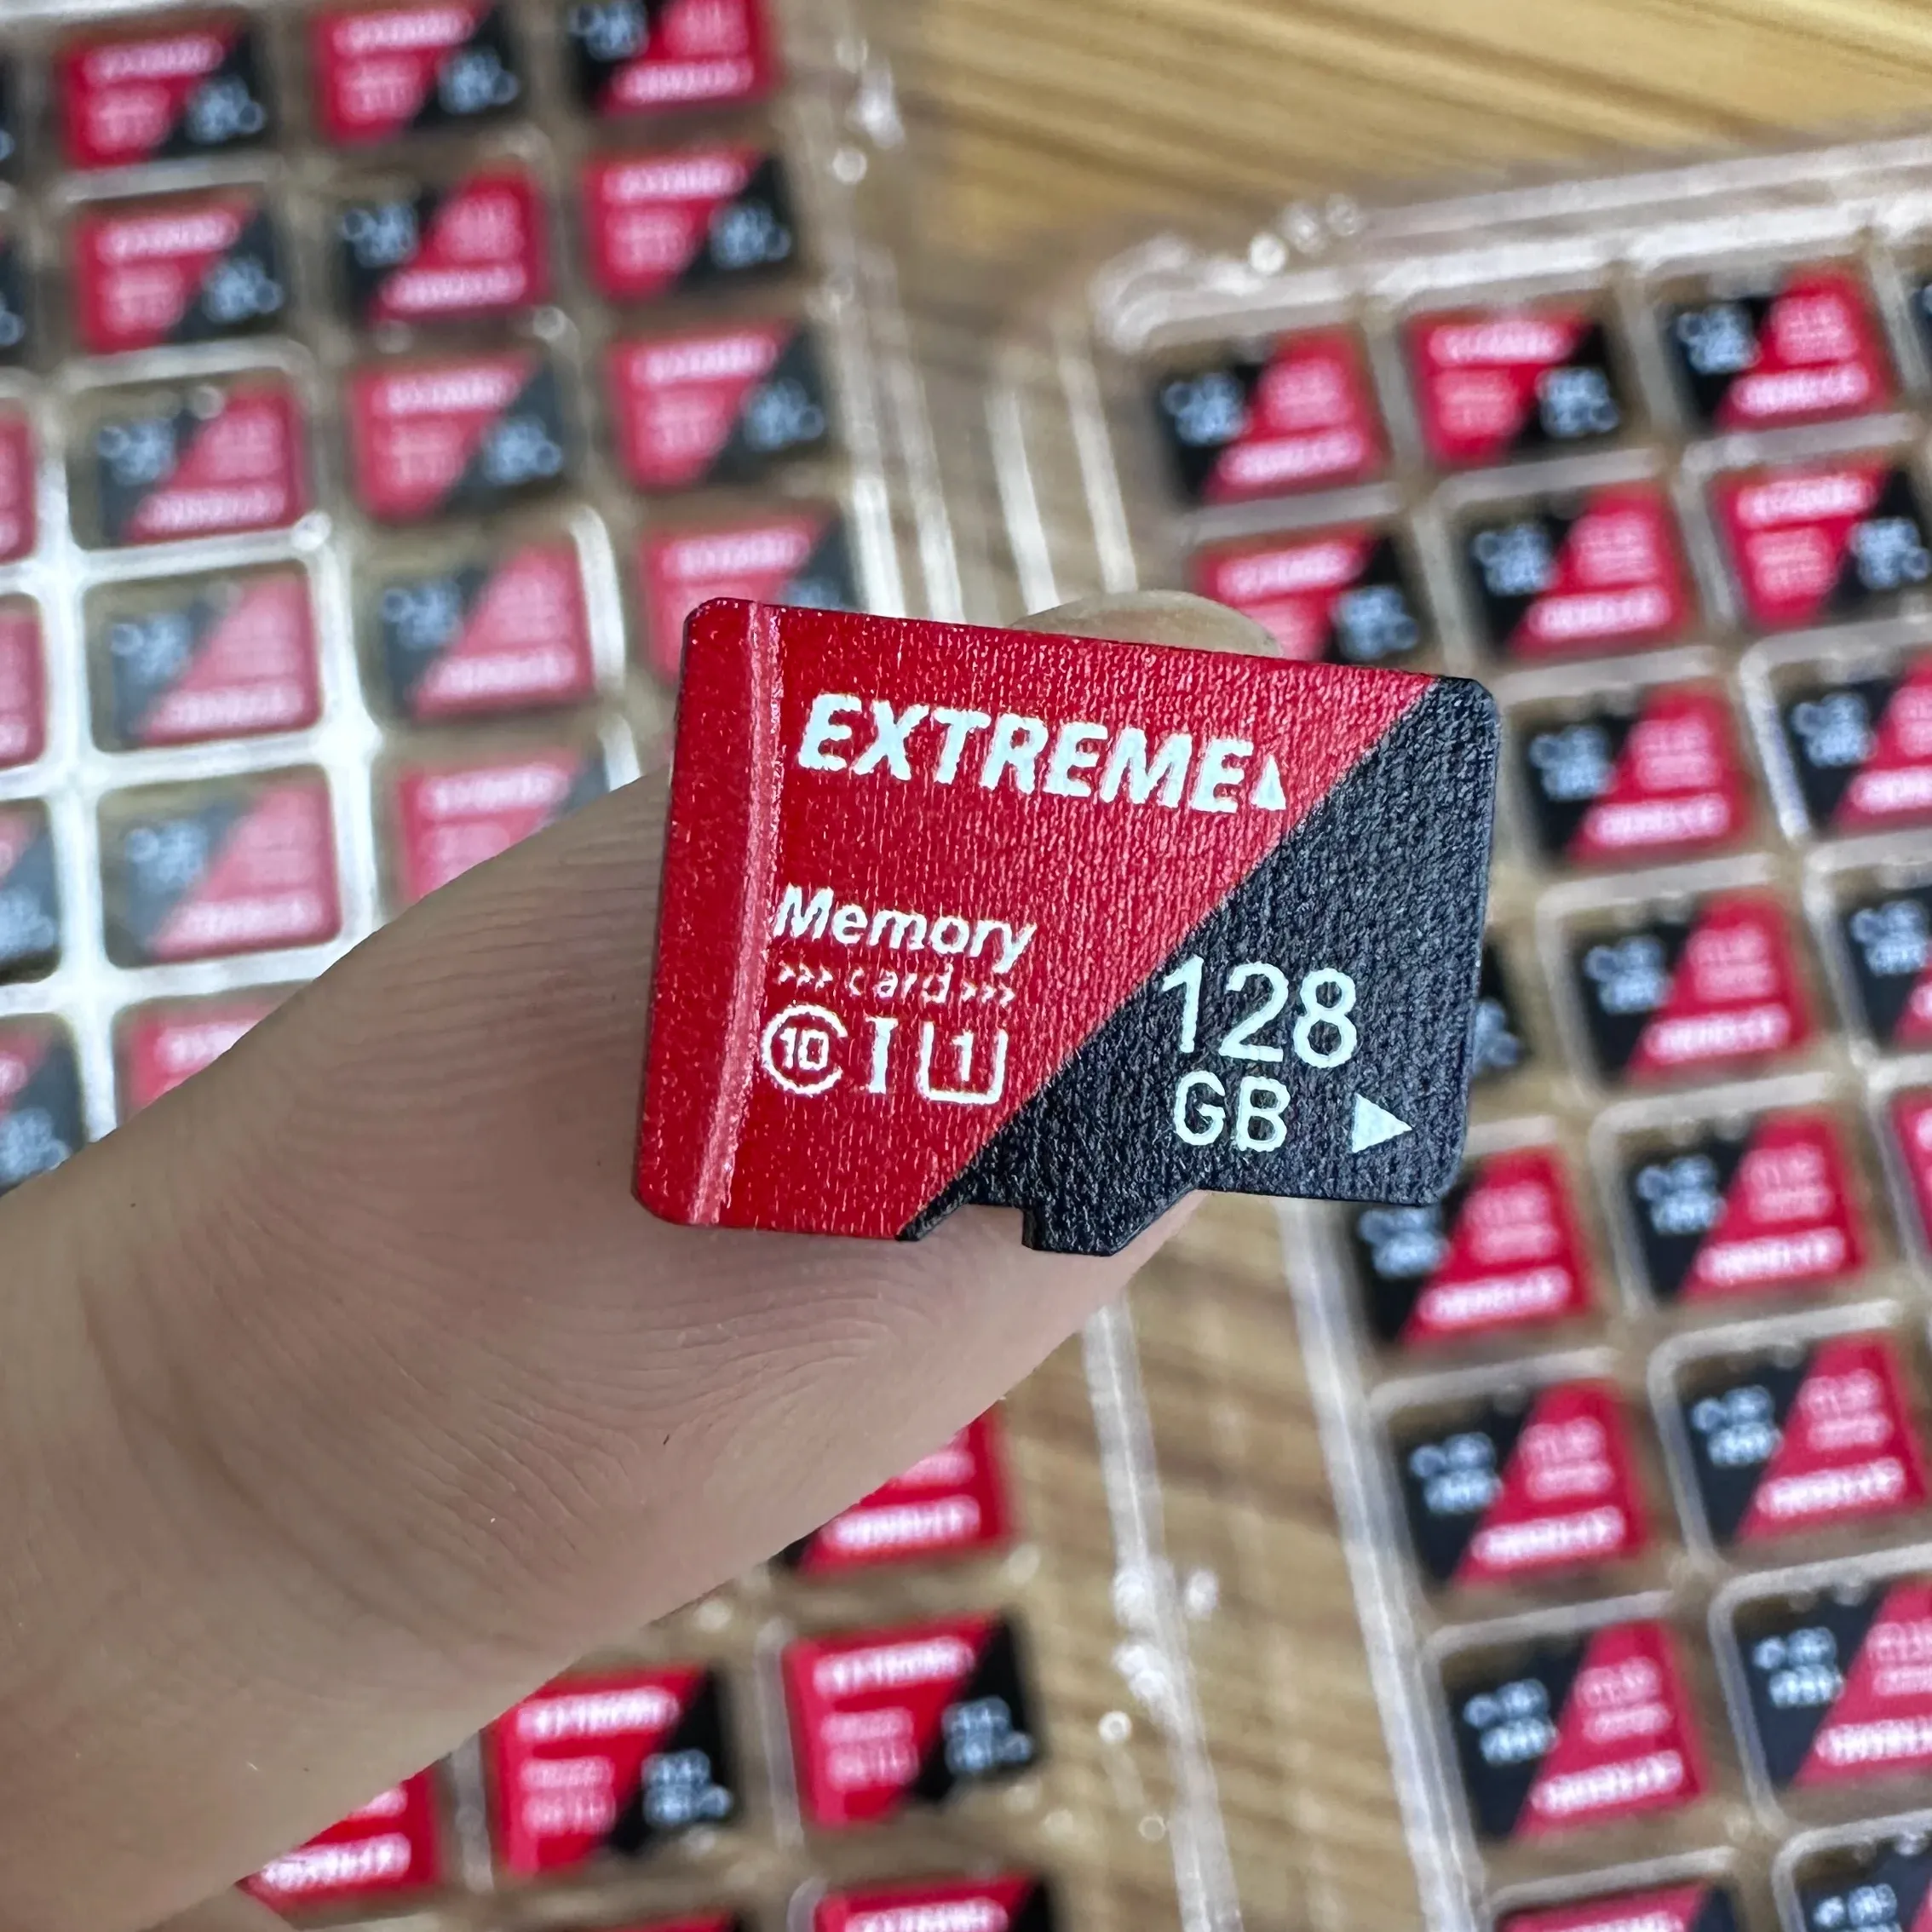 Capacidad real U3 Extreme pro 128GB tarjeta de memoria SD, capacidad total A2 tarjeta SD 128GB memoria, tarjeta SD de alta velocidad 128GB para cámara